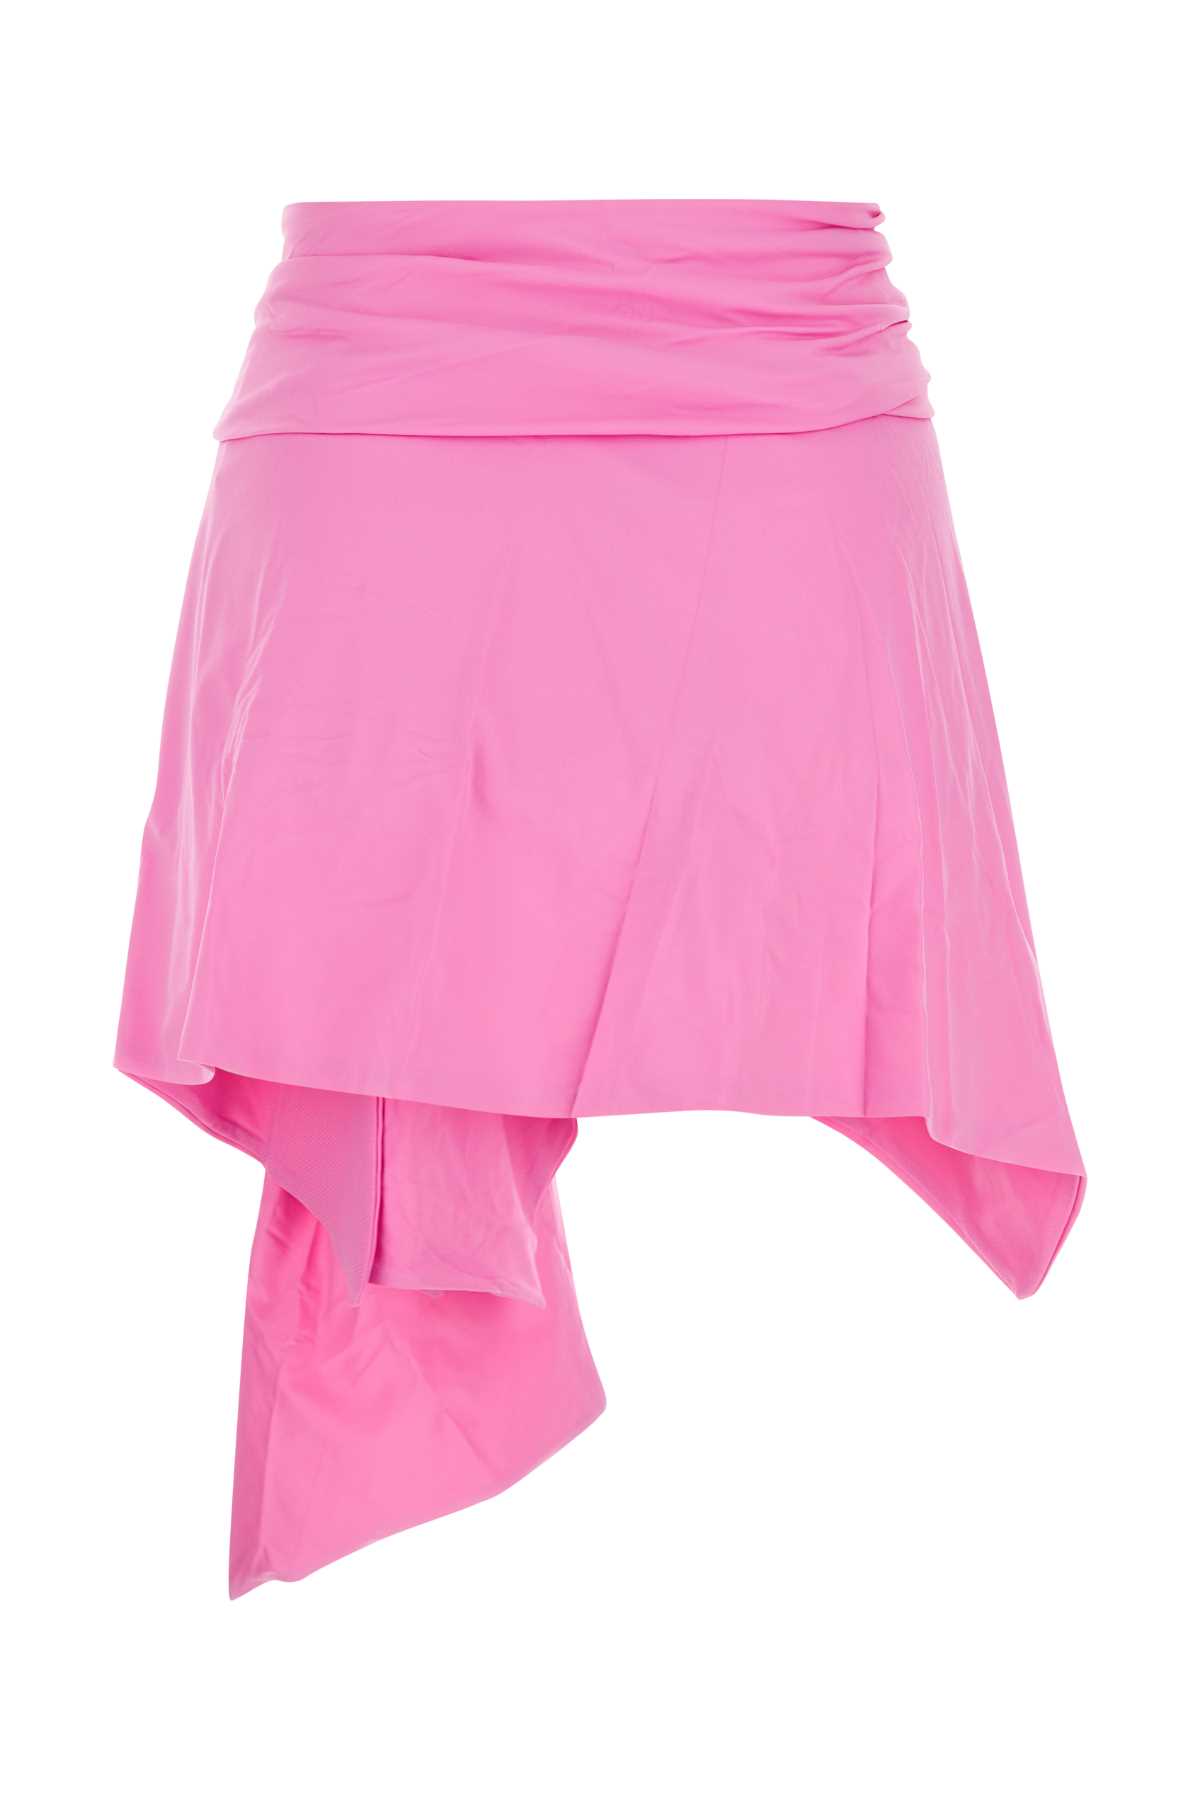 Attico Pink Stretch Nylon Mini Skirt In 266